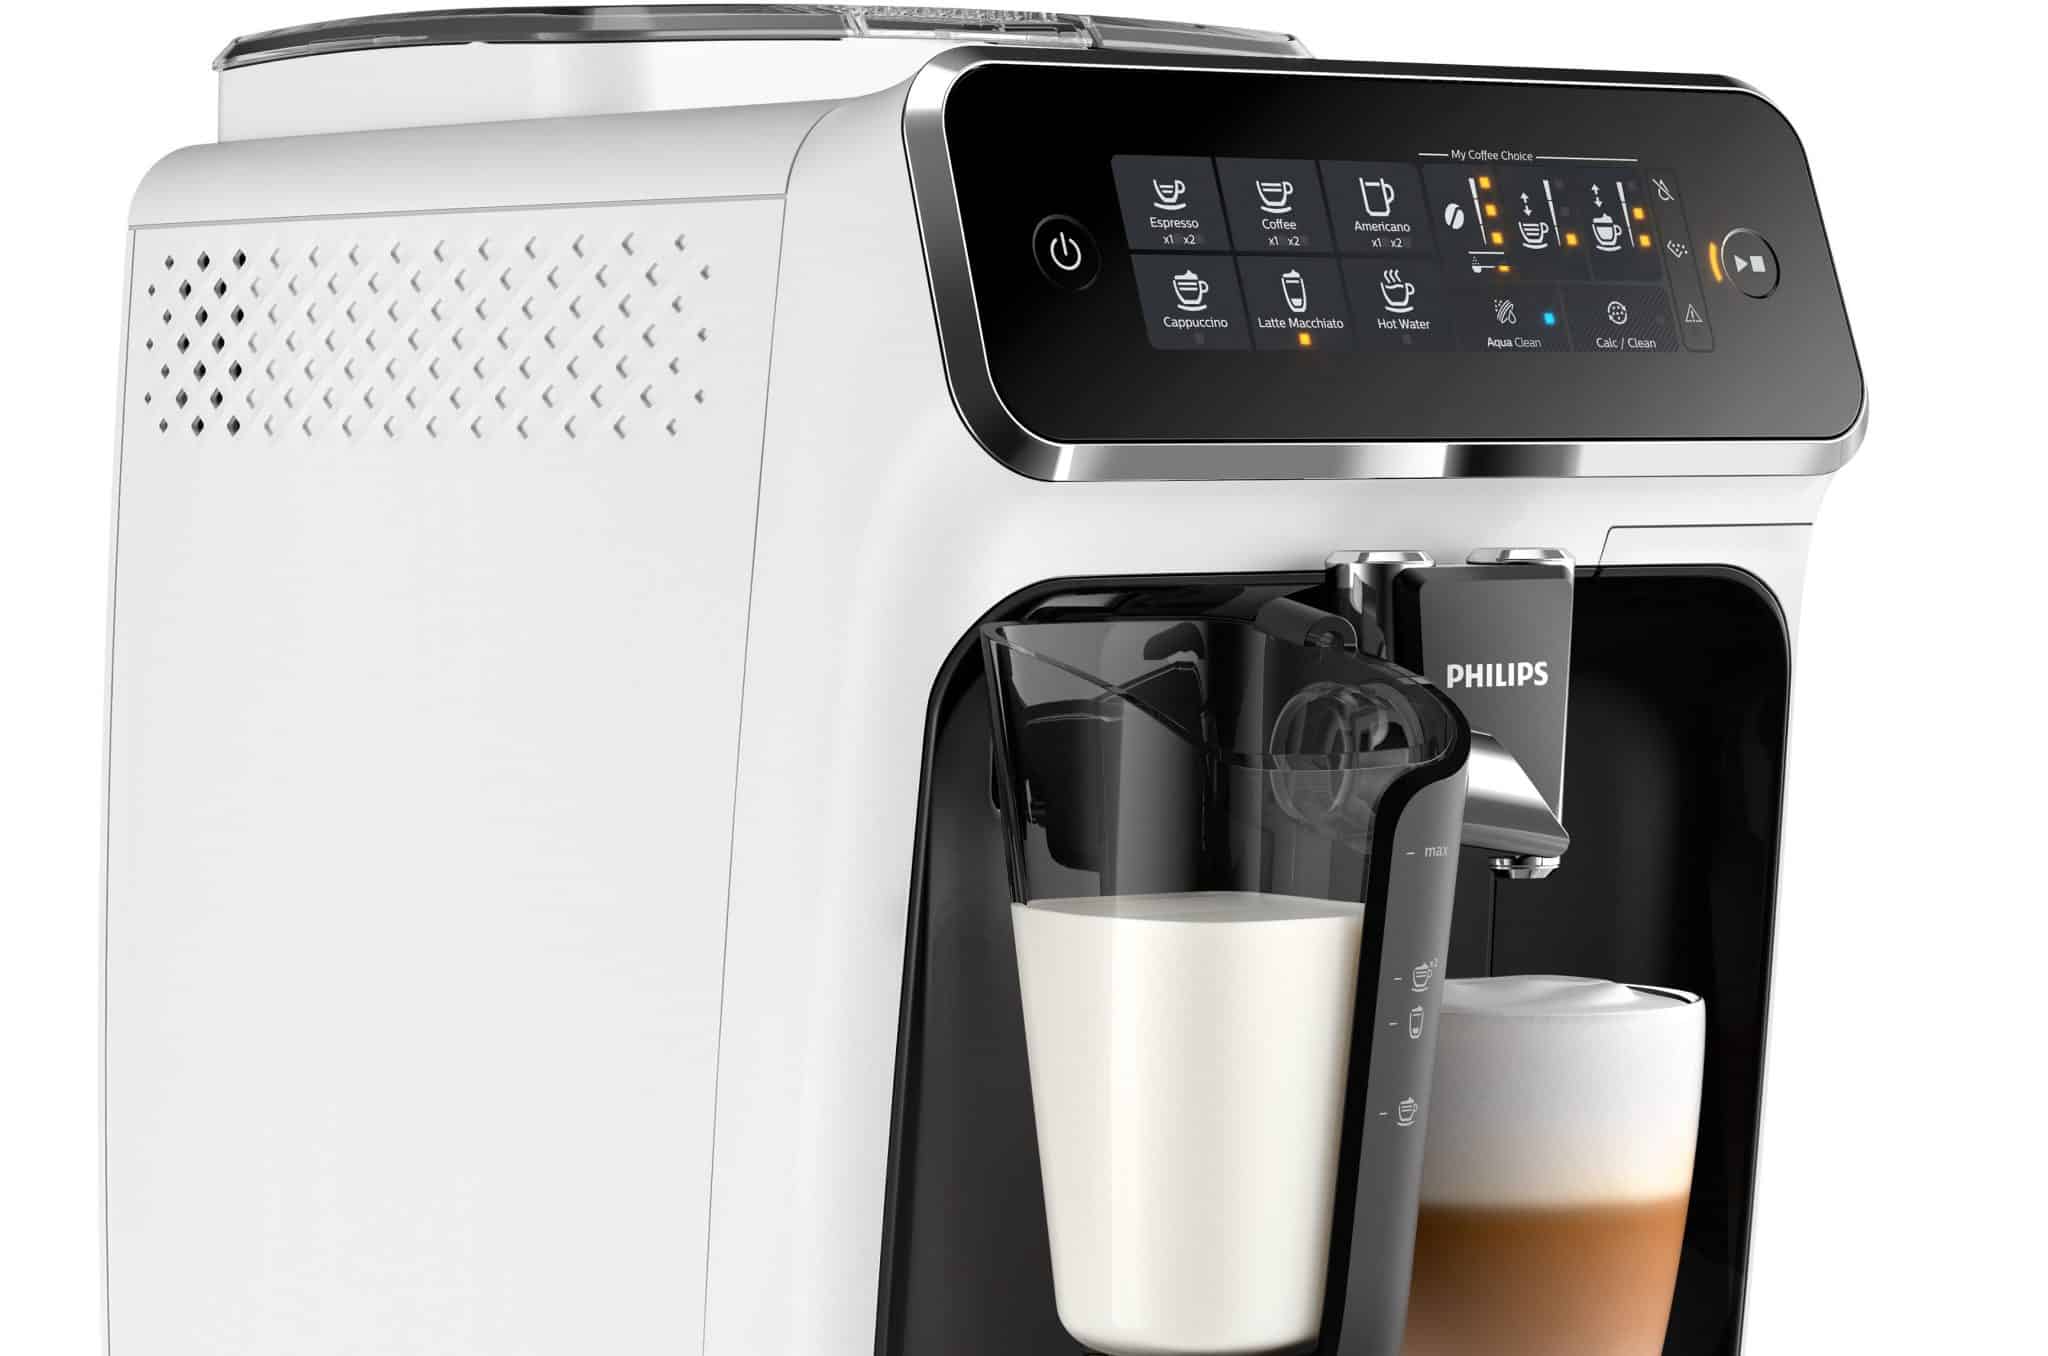 מכונות הקפה האוטומטיות החדשות של פיליפס באות כדי לענות על צרכי הקפה הבסיסיים של הציבור הישראלי חובב הקפה ומספקות חווית קפה איכותית בבית